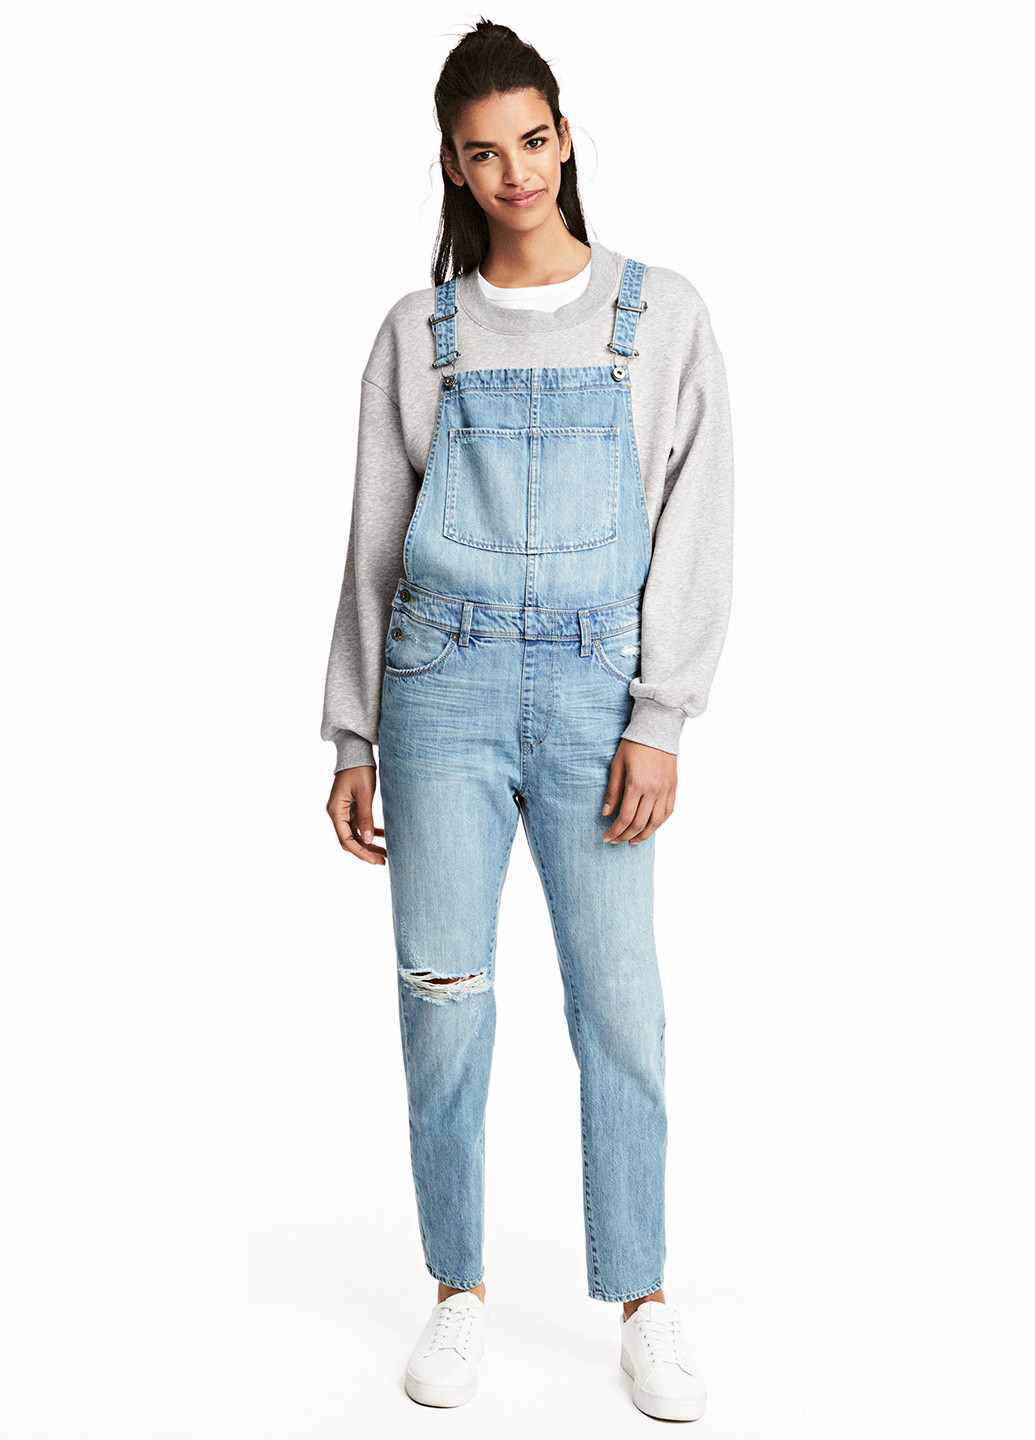 Комбінезон H&M комбінезон-брюки однотонний блакитний джинсовий